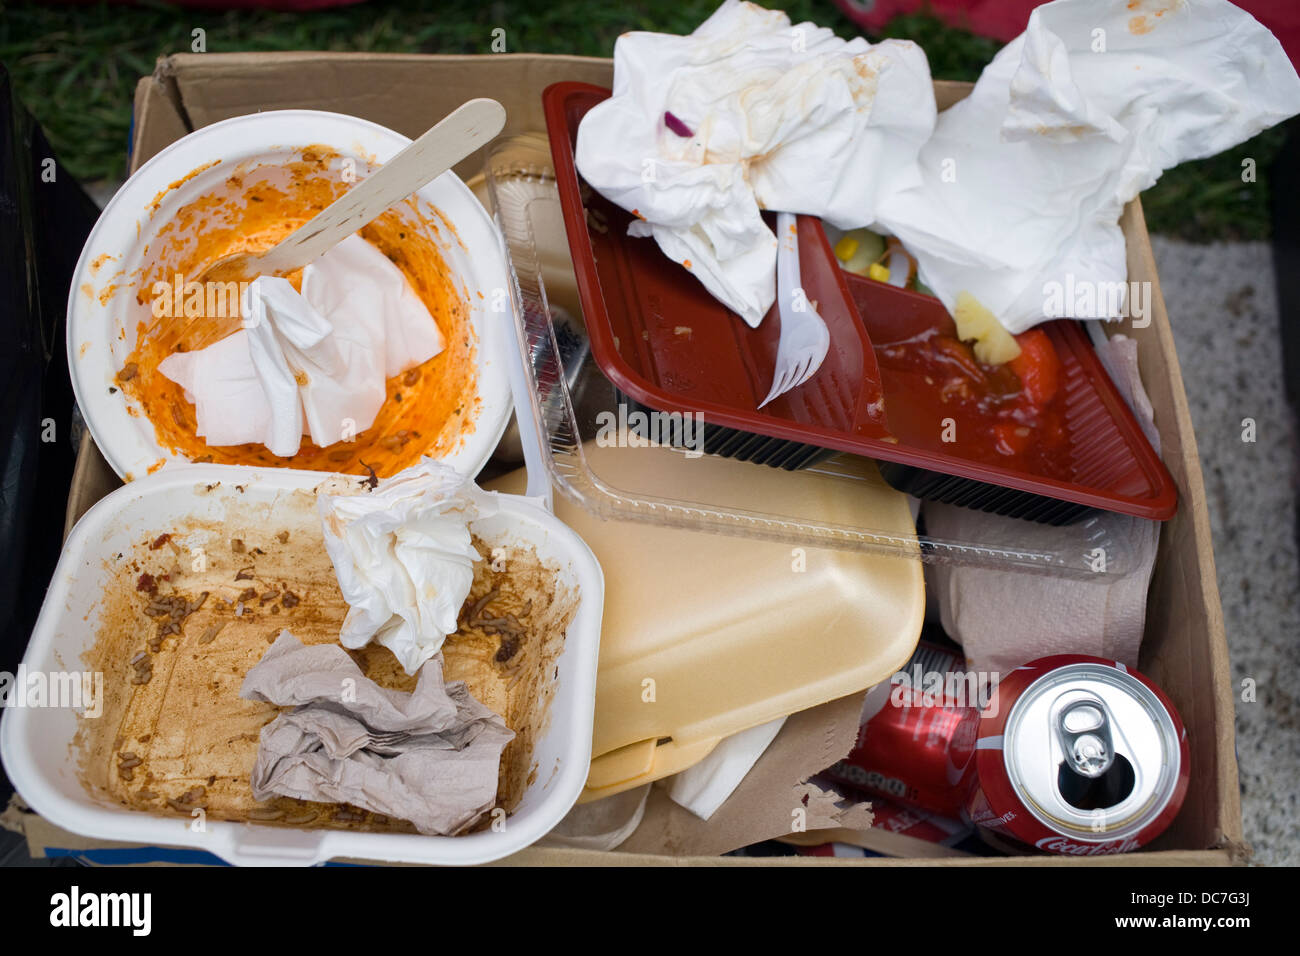 FAST FOOD: DUMPSTER ADVENTURE - Pelaa Fast Food: Dumpster Adventure  sovelluksessa Poki